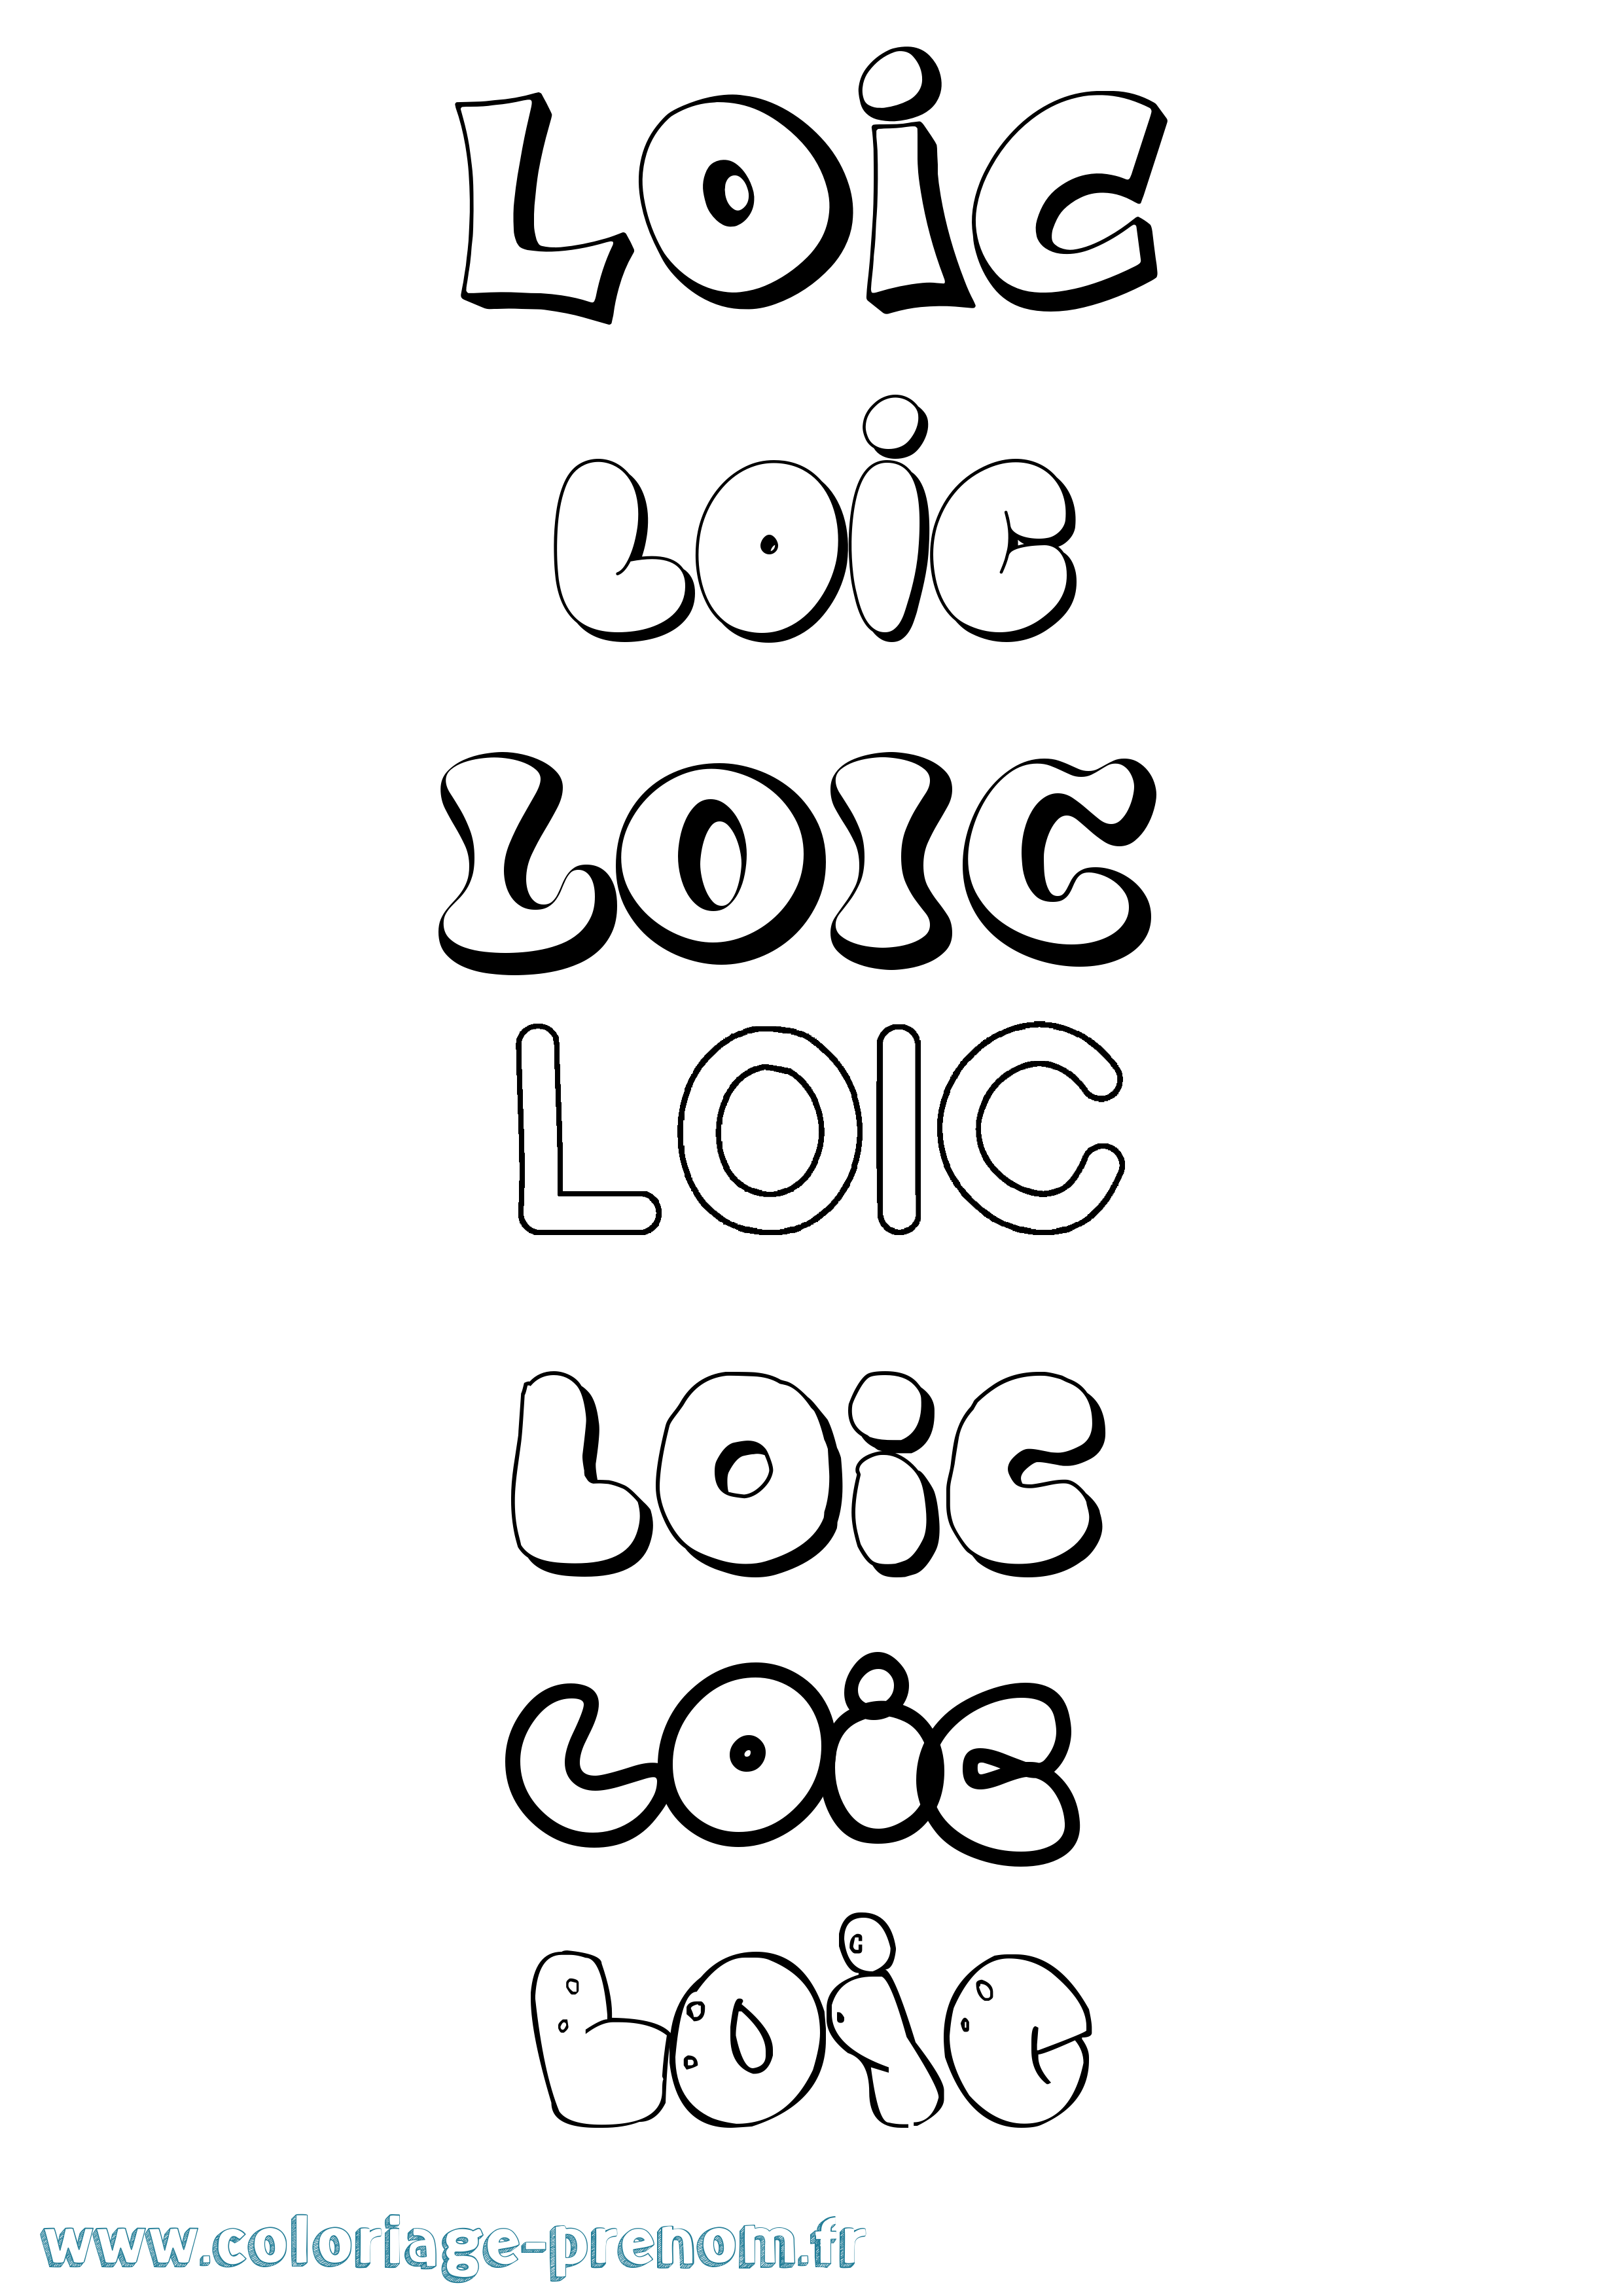 Coloriage prénom Loic Bubble